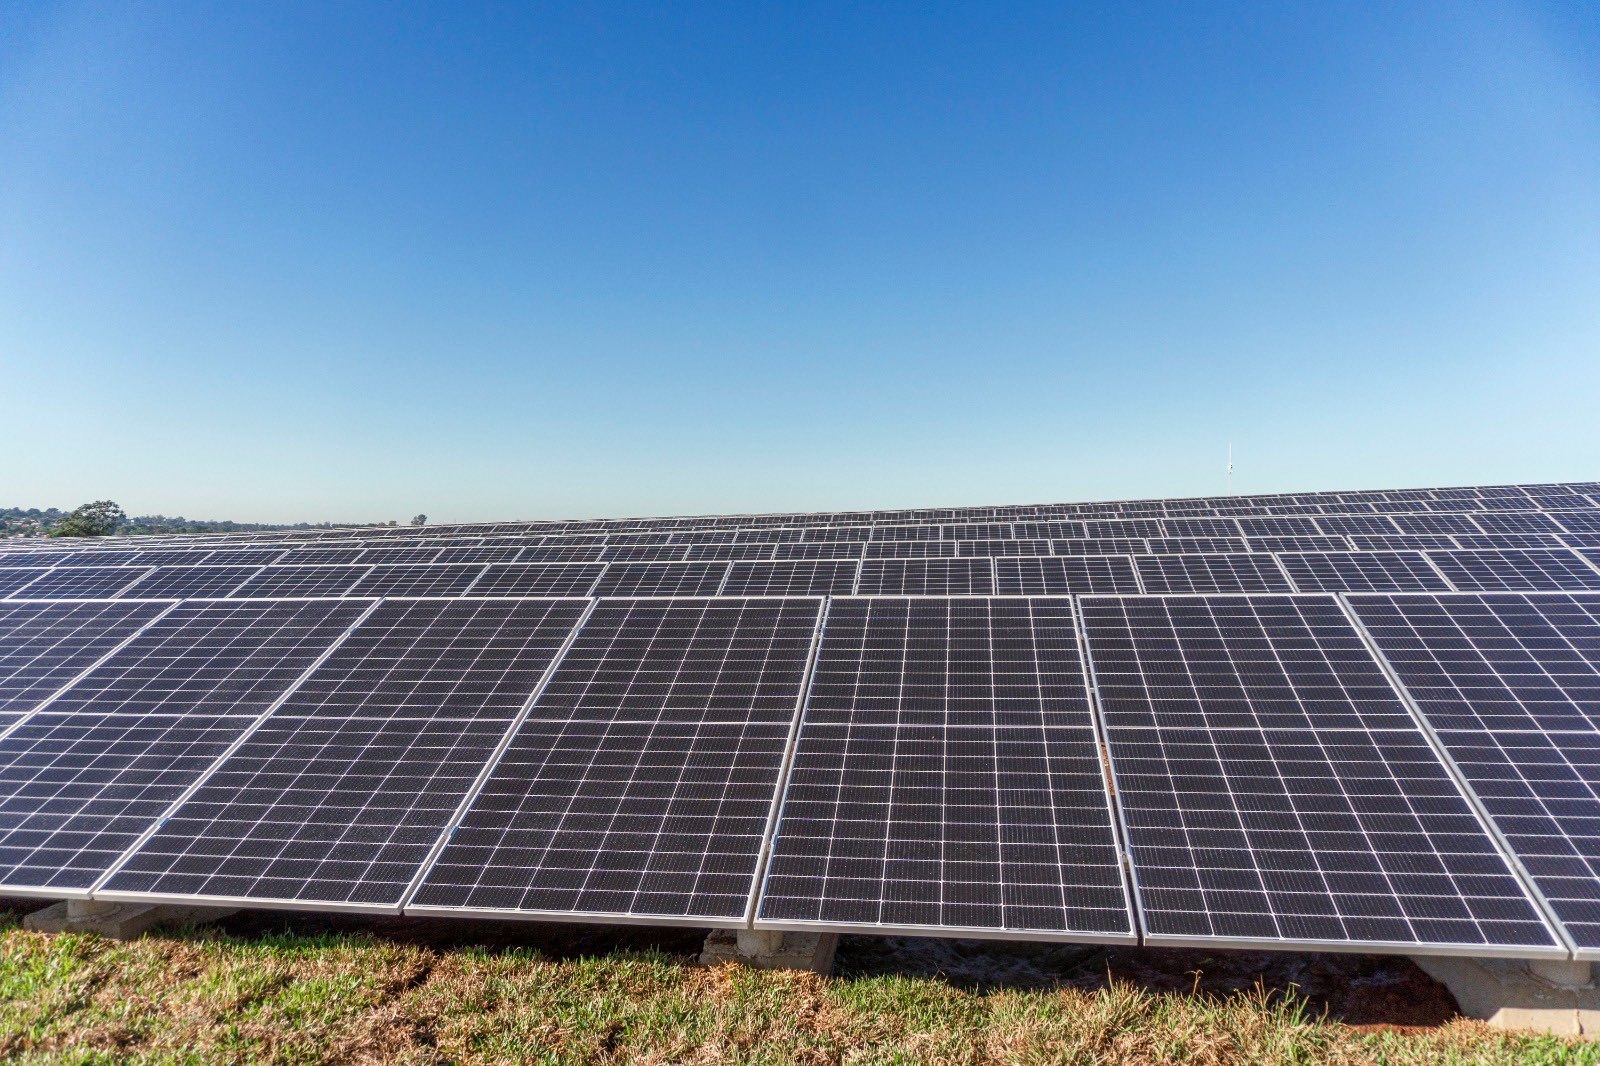 Destacan que el Parque Solar Fotovoltaico "Silicon Misiones" tiene aprobada la viabilidad ambiental y evalúan otros proyectos similares imagen-1